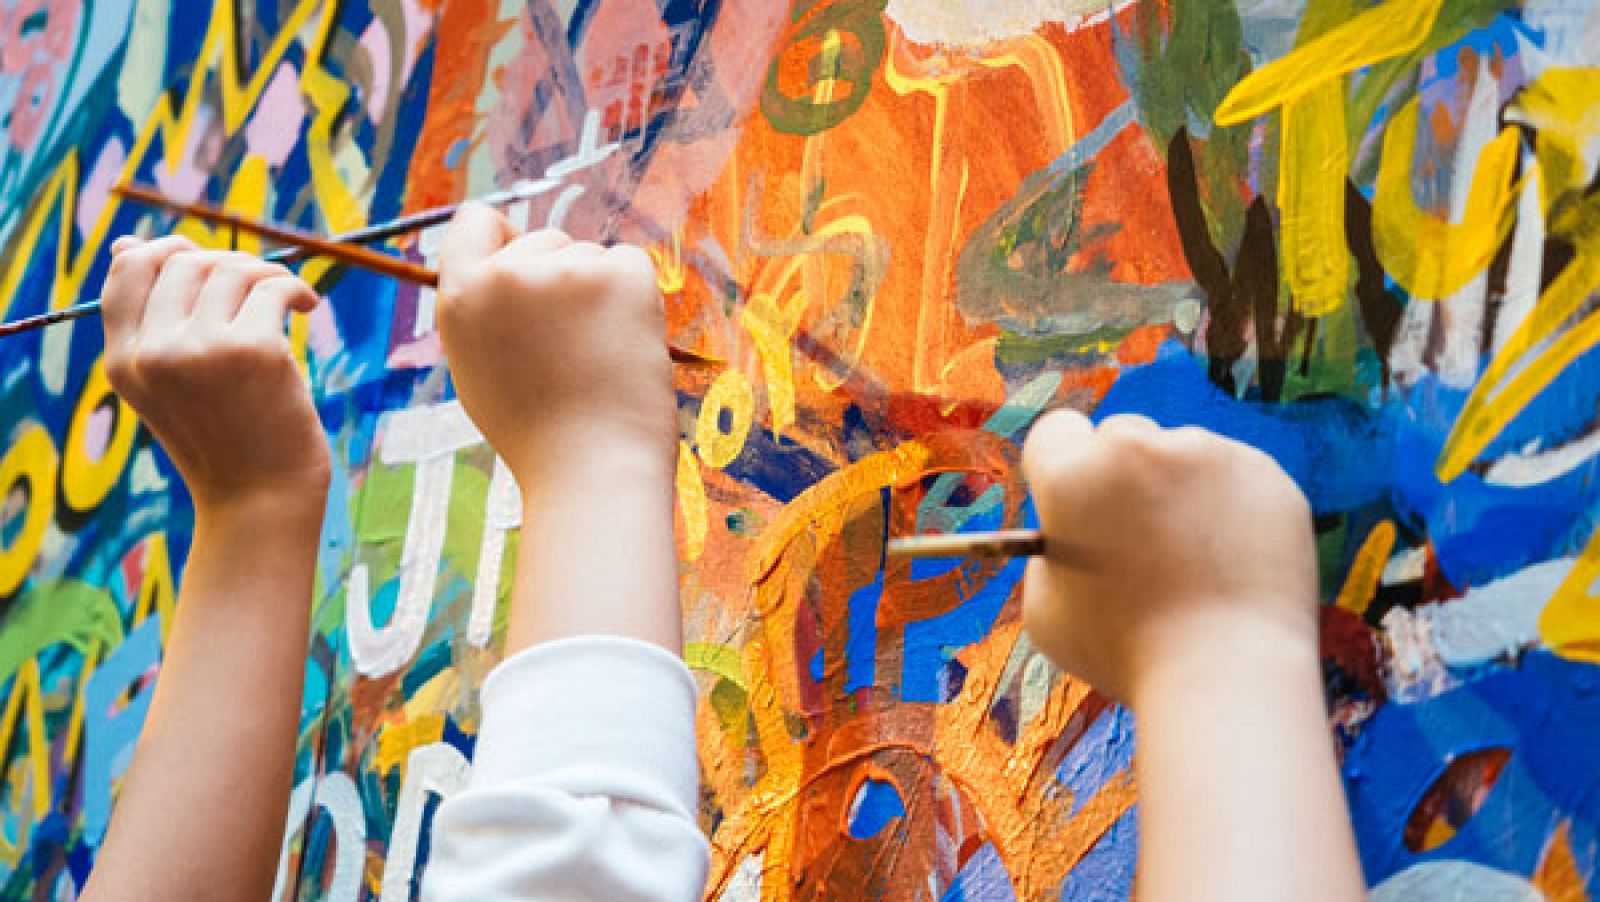 Niños madrileños reivindican la importancia del arte en la educación dibujando obras de pintores españoles - RTVE.es